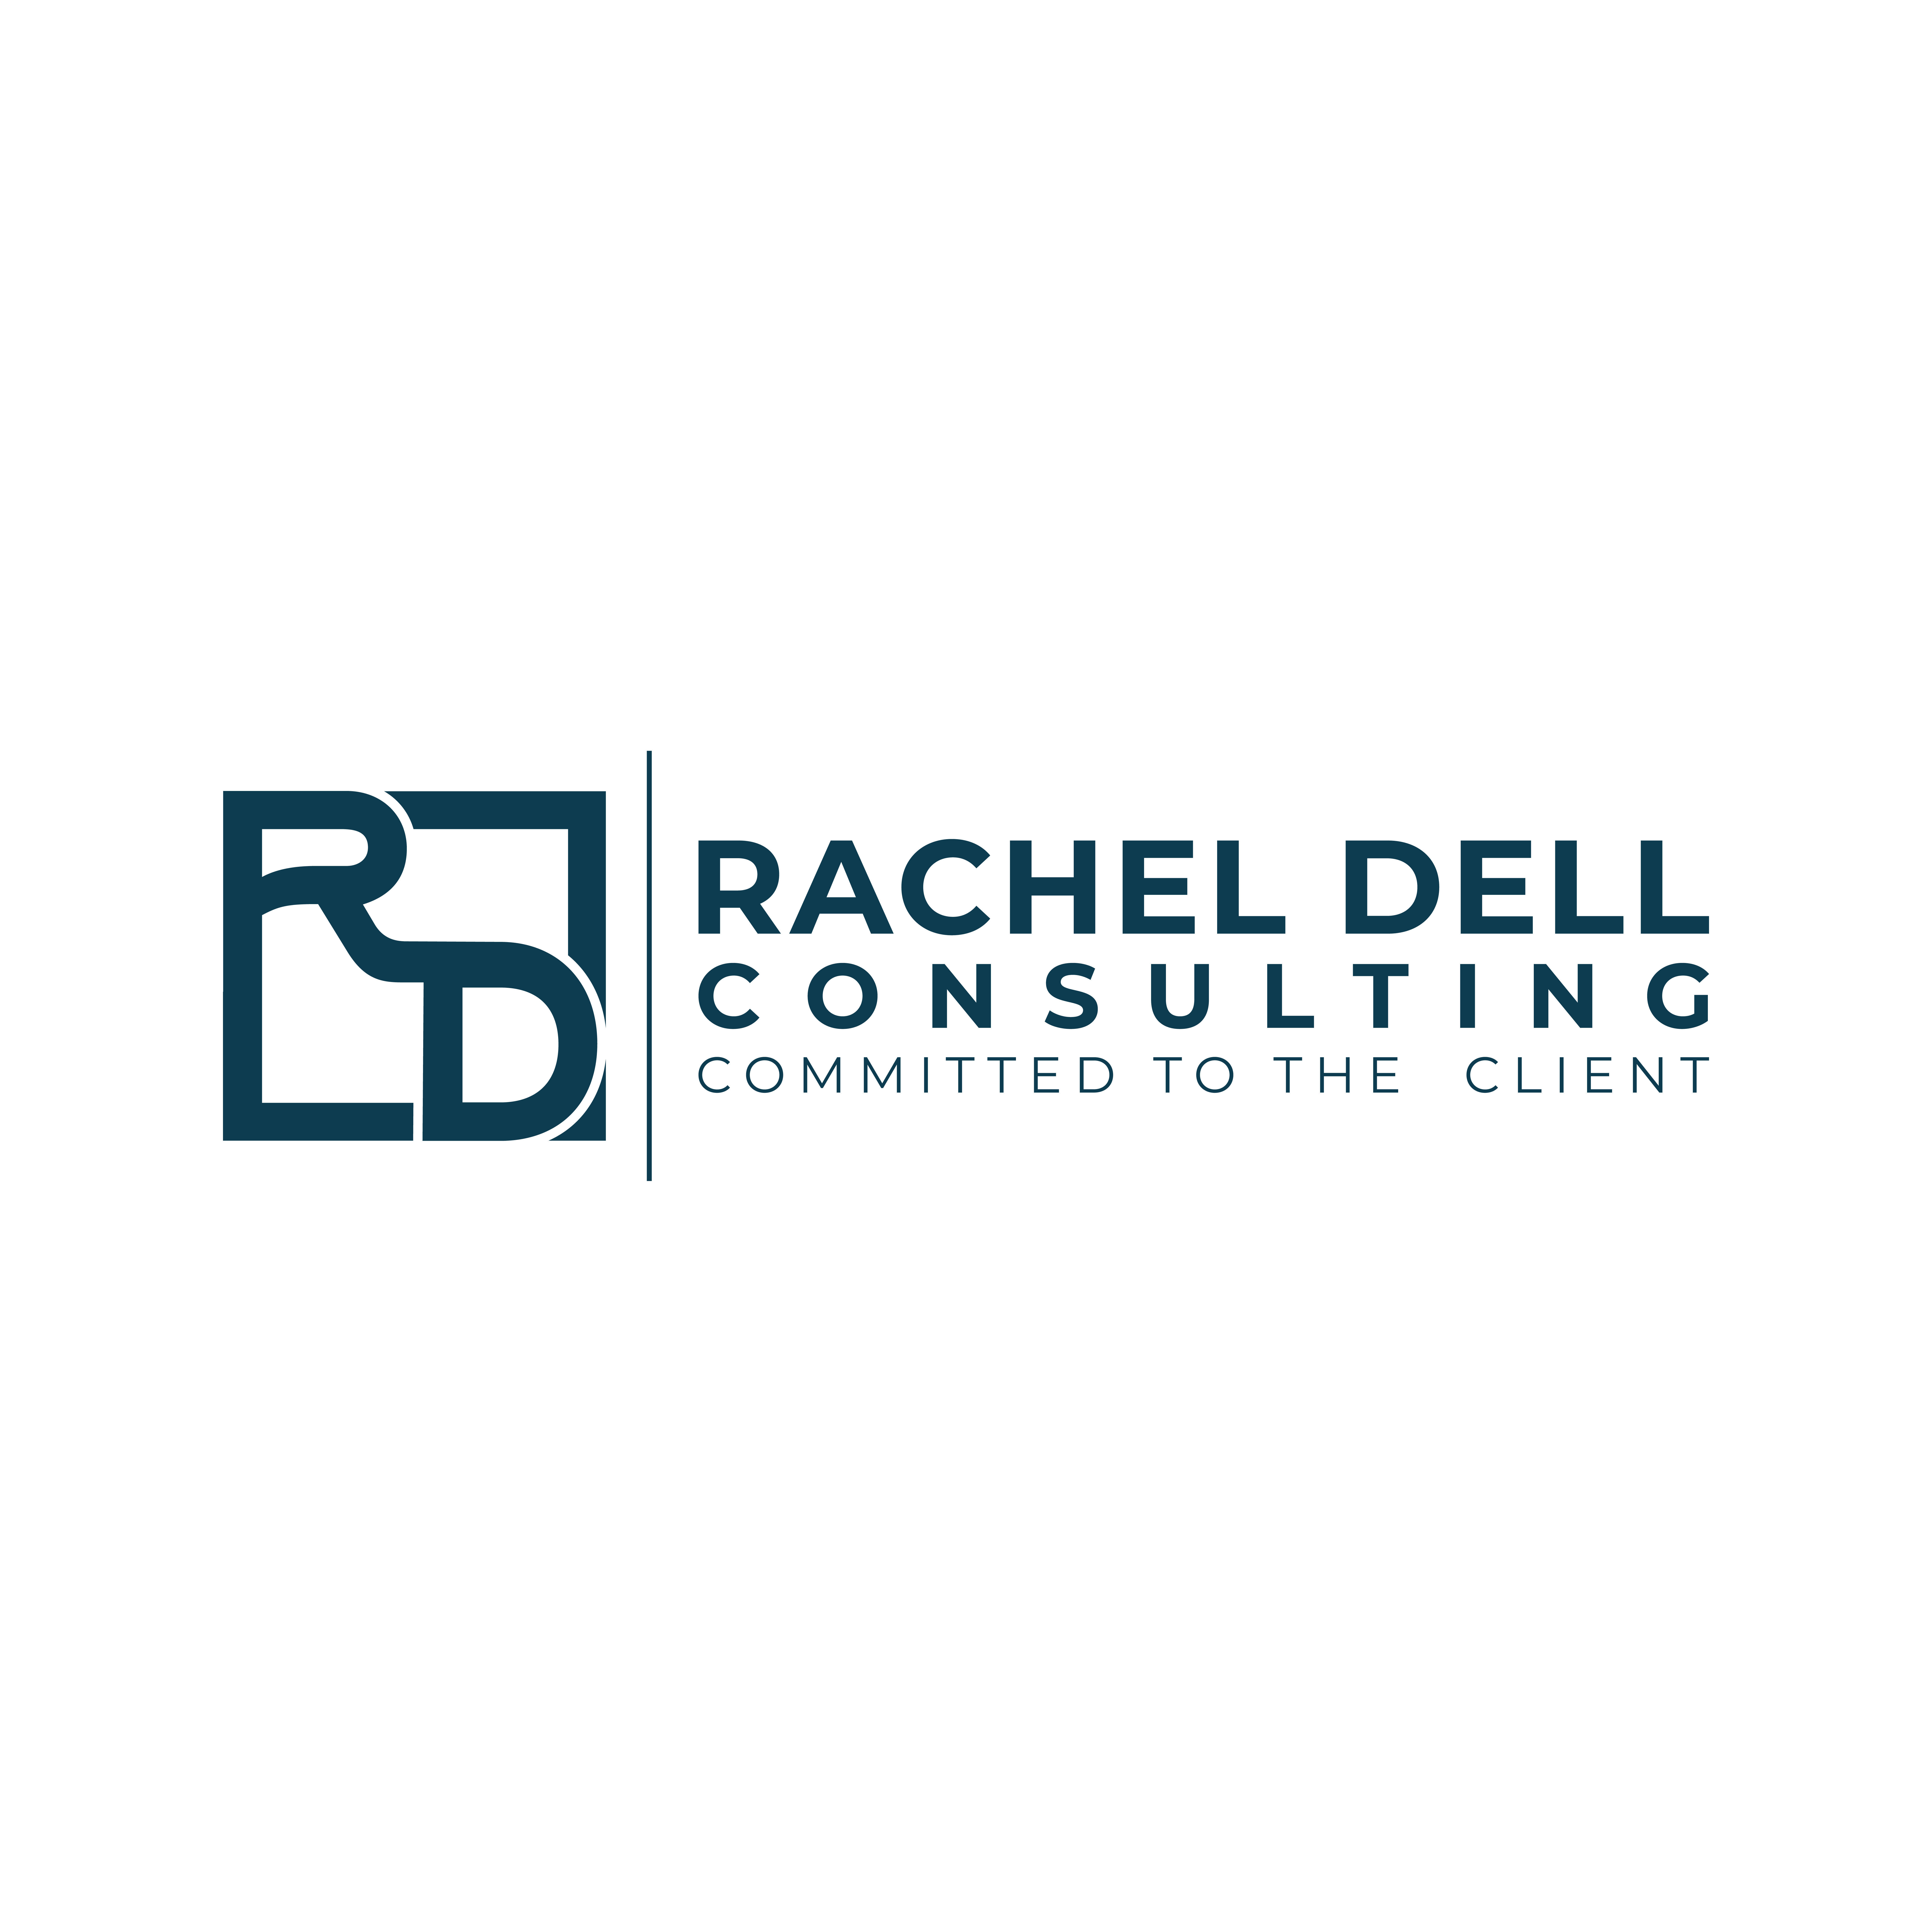 Rachel Dell